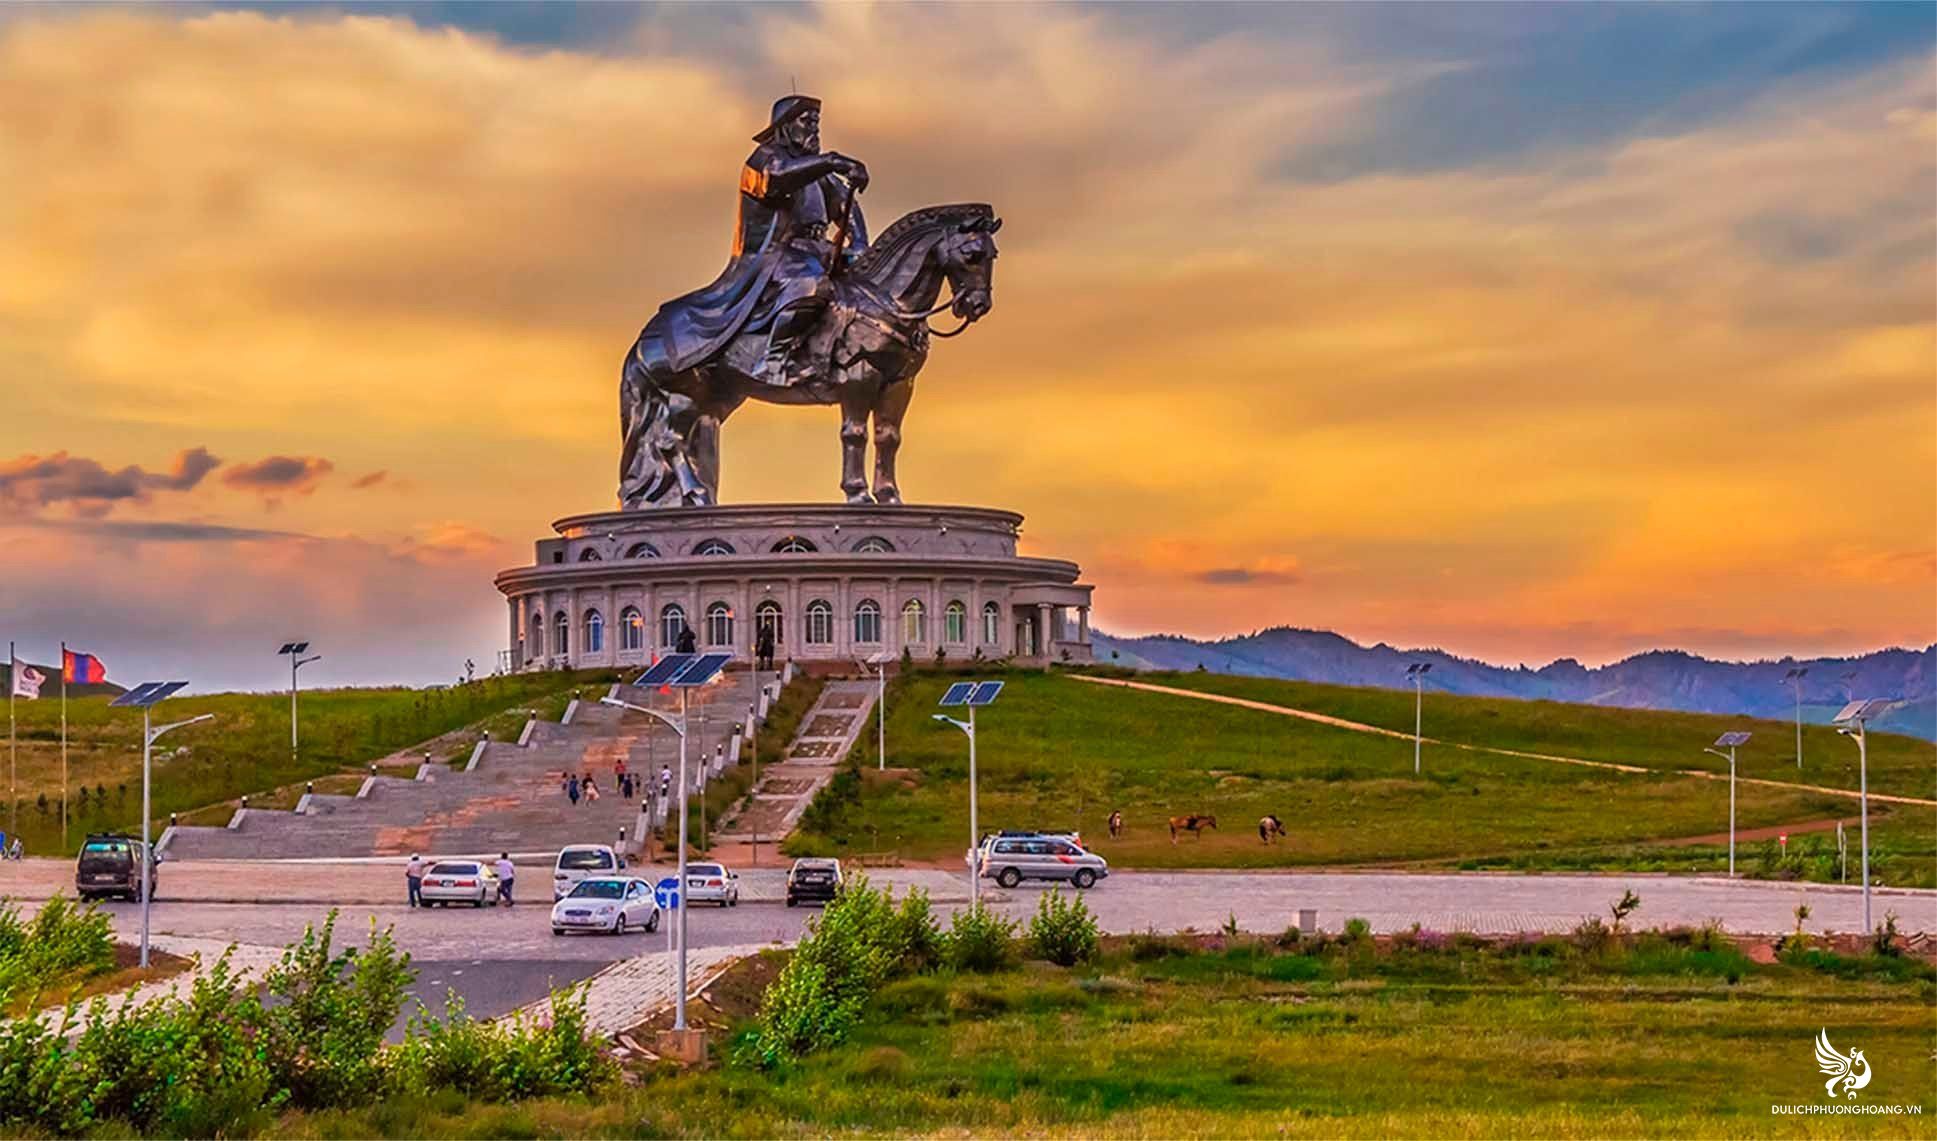 Tour du lịch Mông Cổ 8 ngày 7 đêm từ Hà Nội